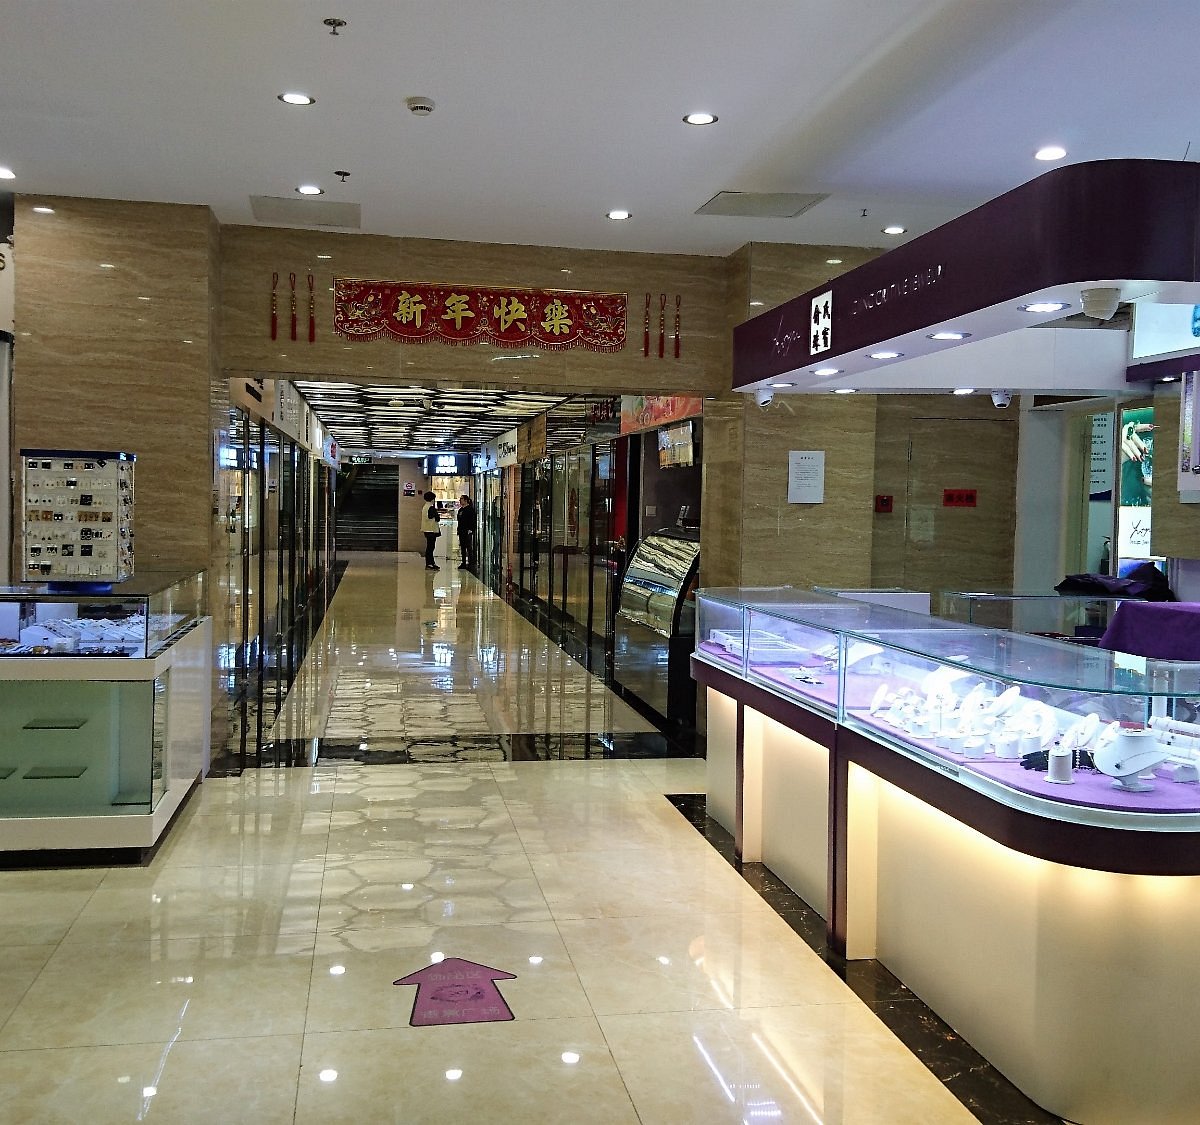 De Beers Jewellers Hangzhou Tower Store